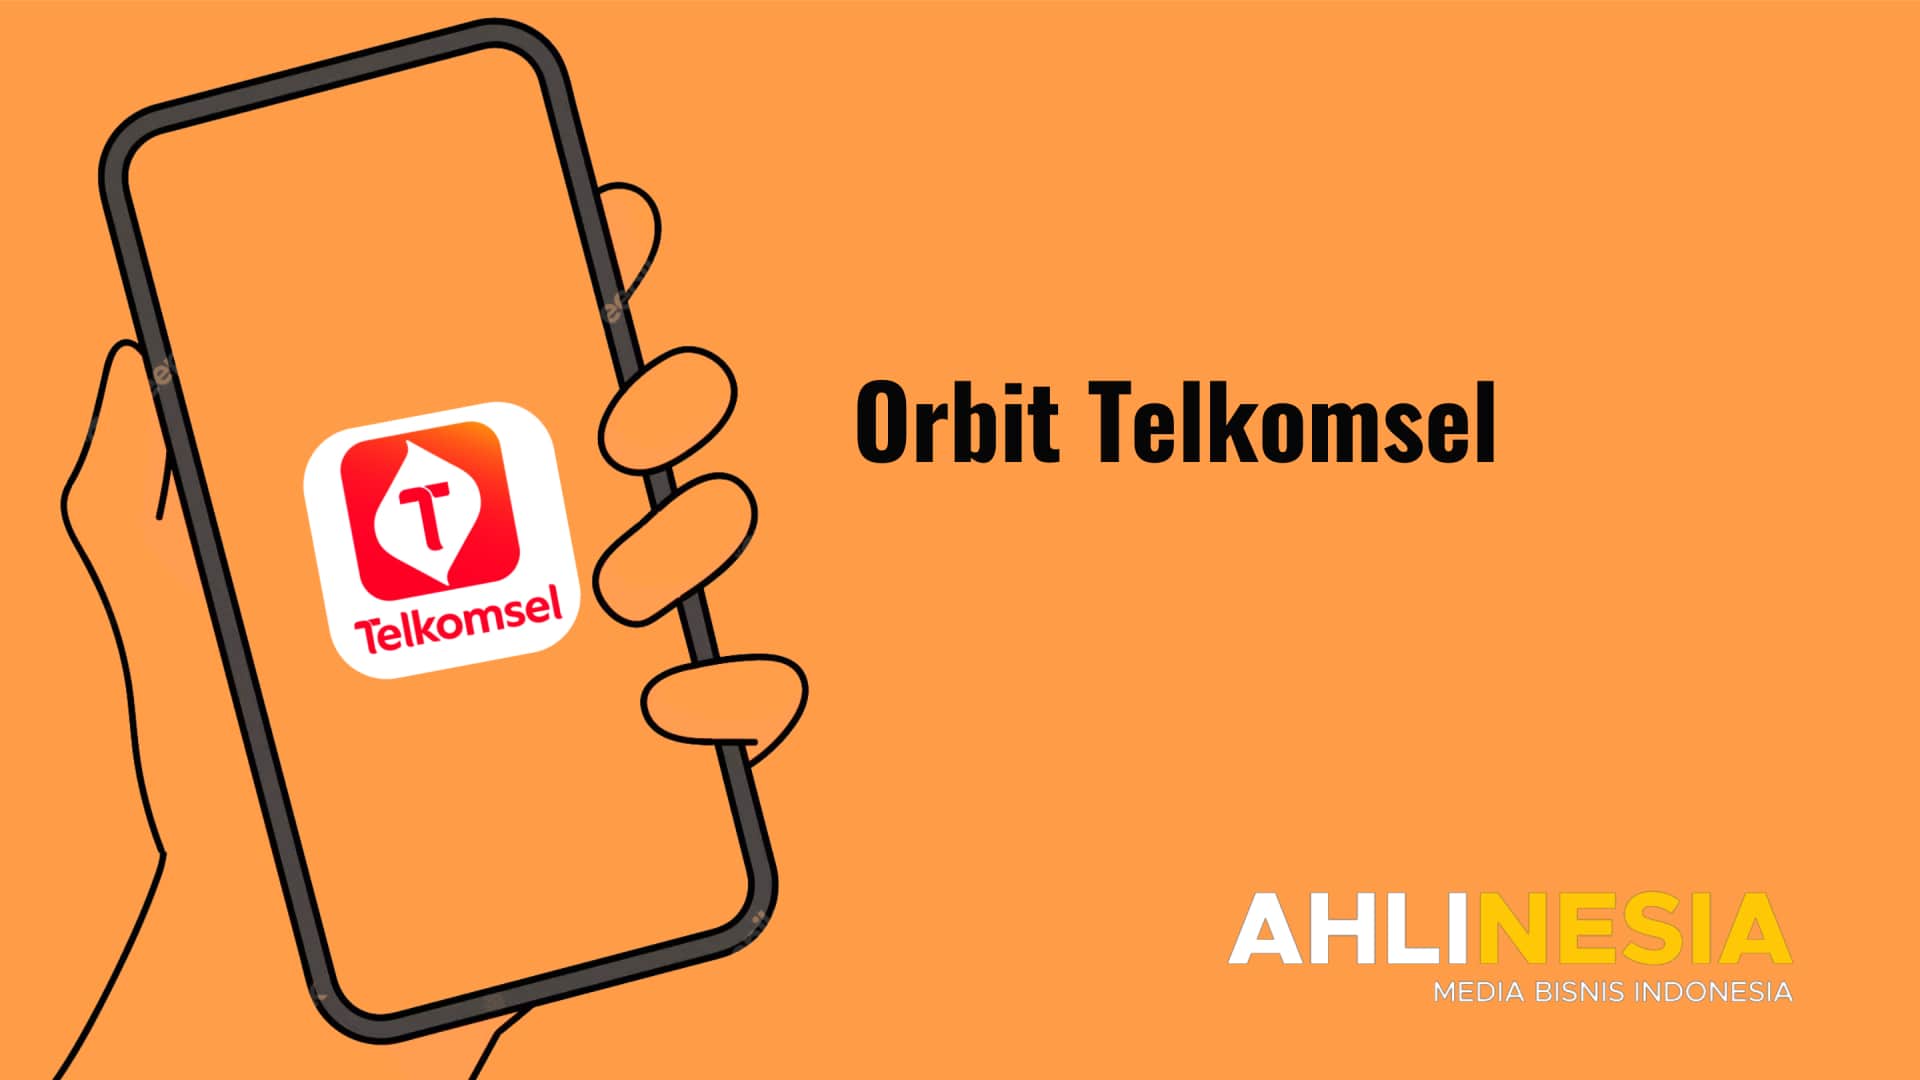 Orbit Telkomsel